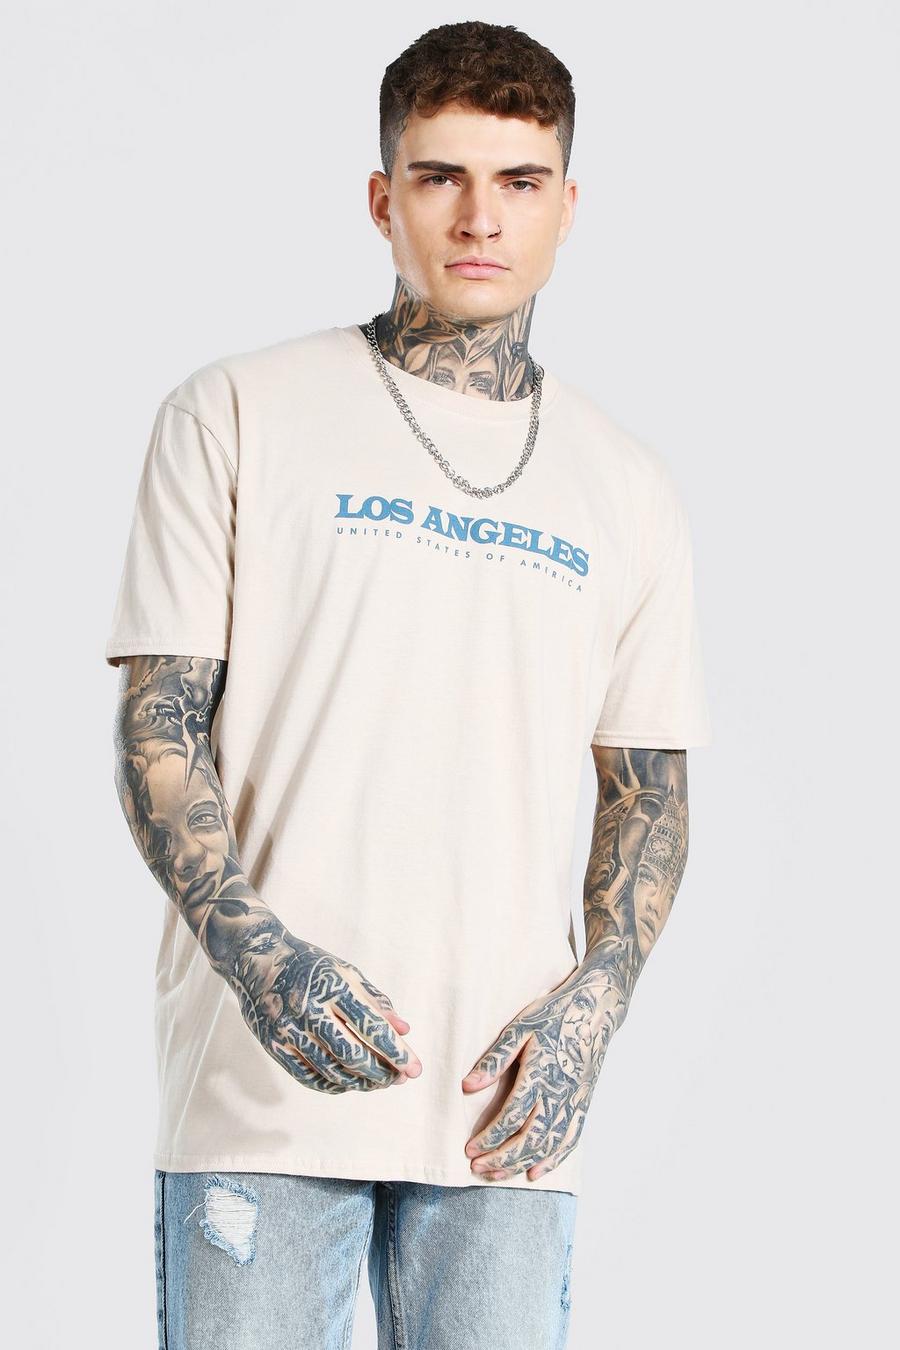 Camiseta ancha estampada de Los Angeles, Arena image number 1